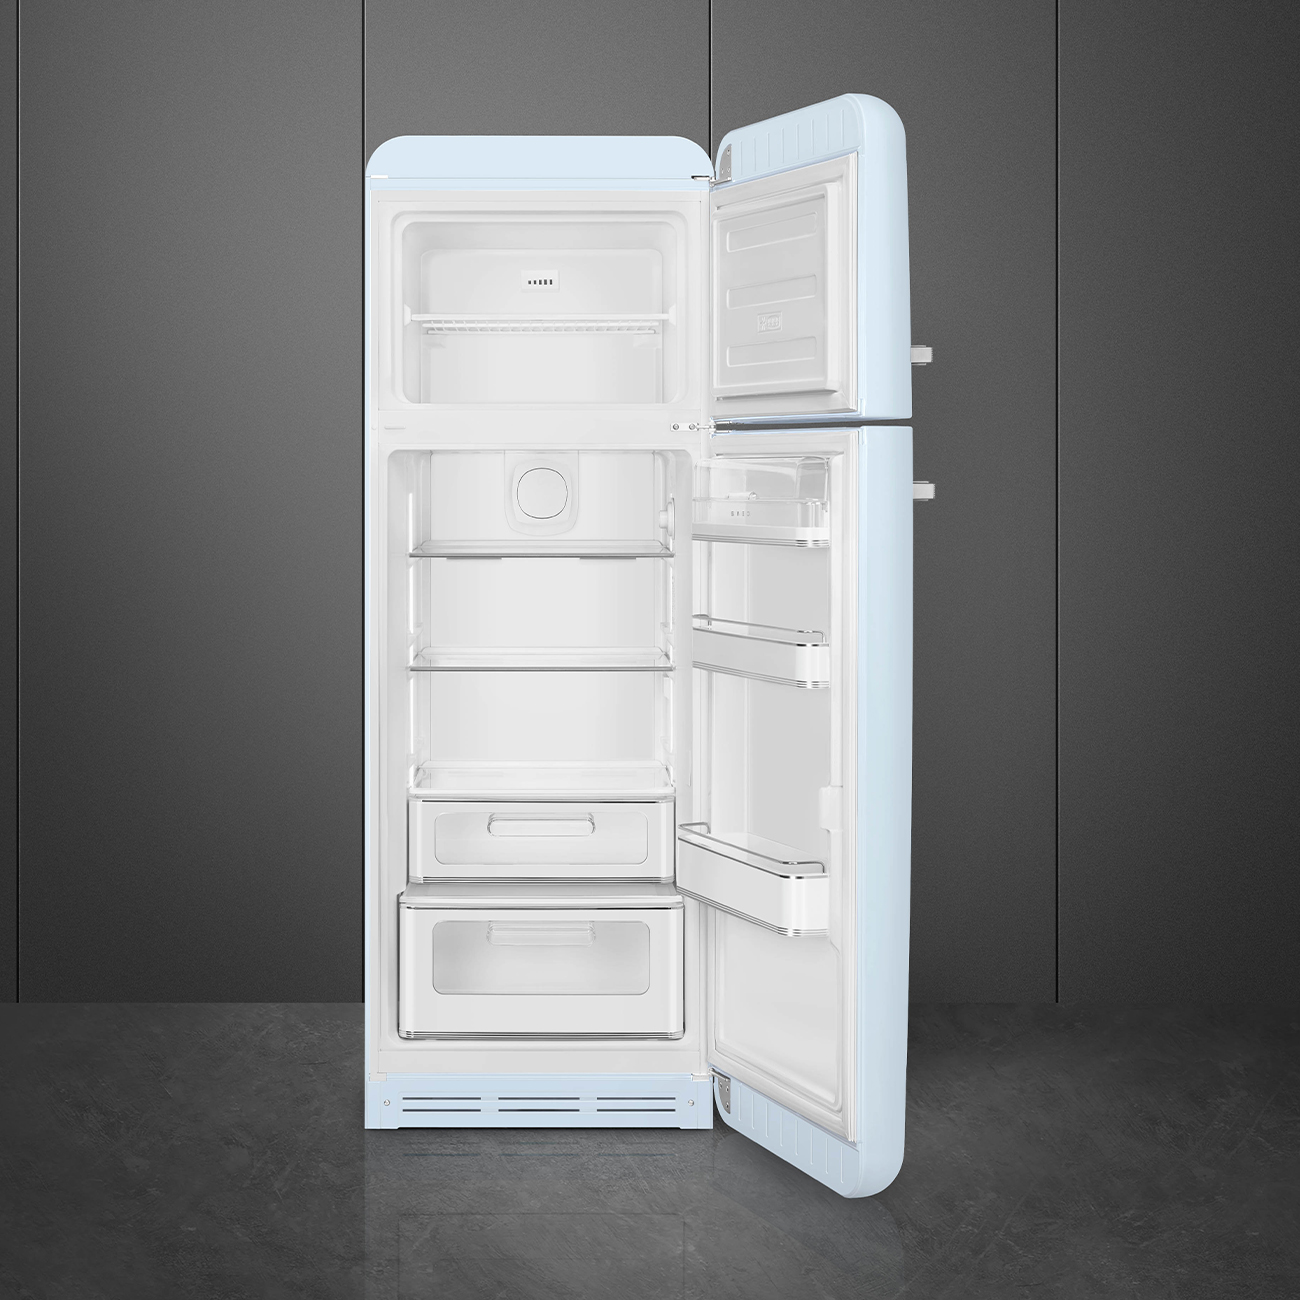 Pastel blue refrigerator - Smeg_6